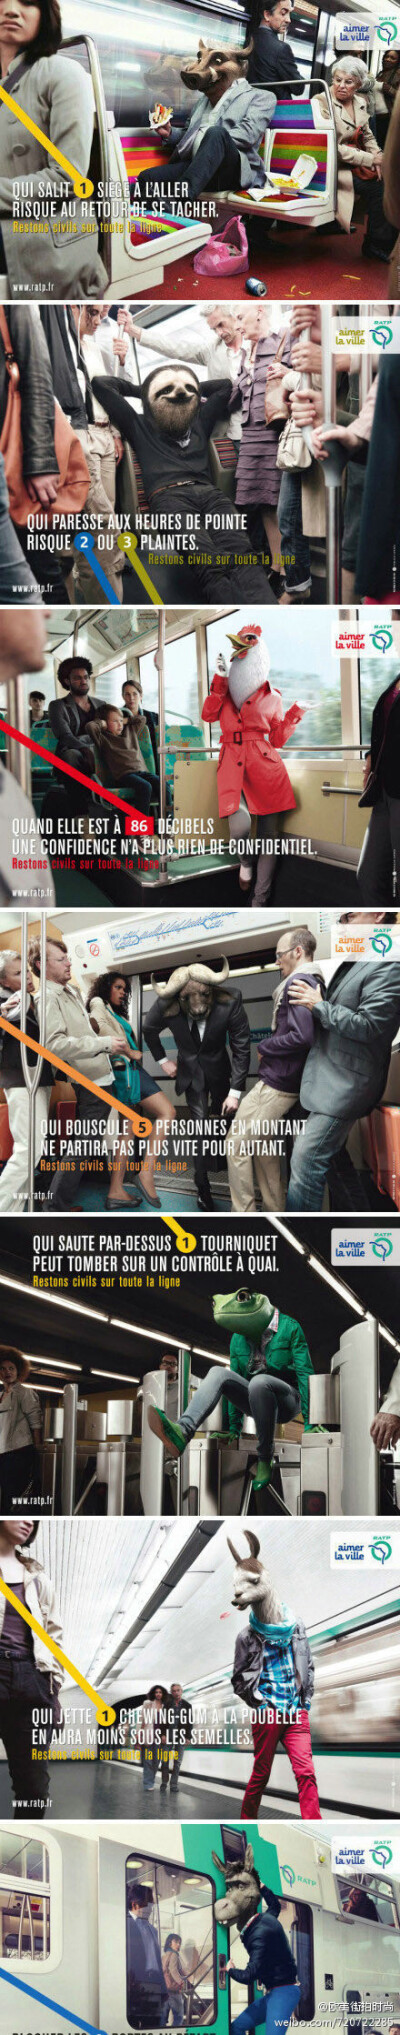 巴黎的地铁广告，它很明确的告诉我们，凡是有以下行为的…都是畜生！